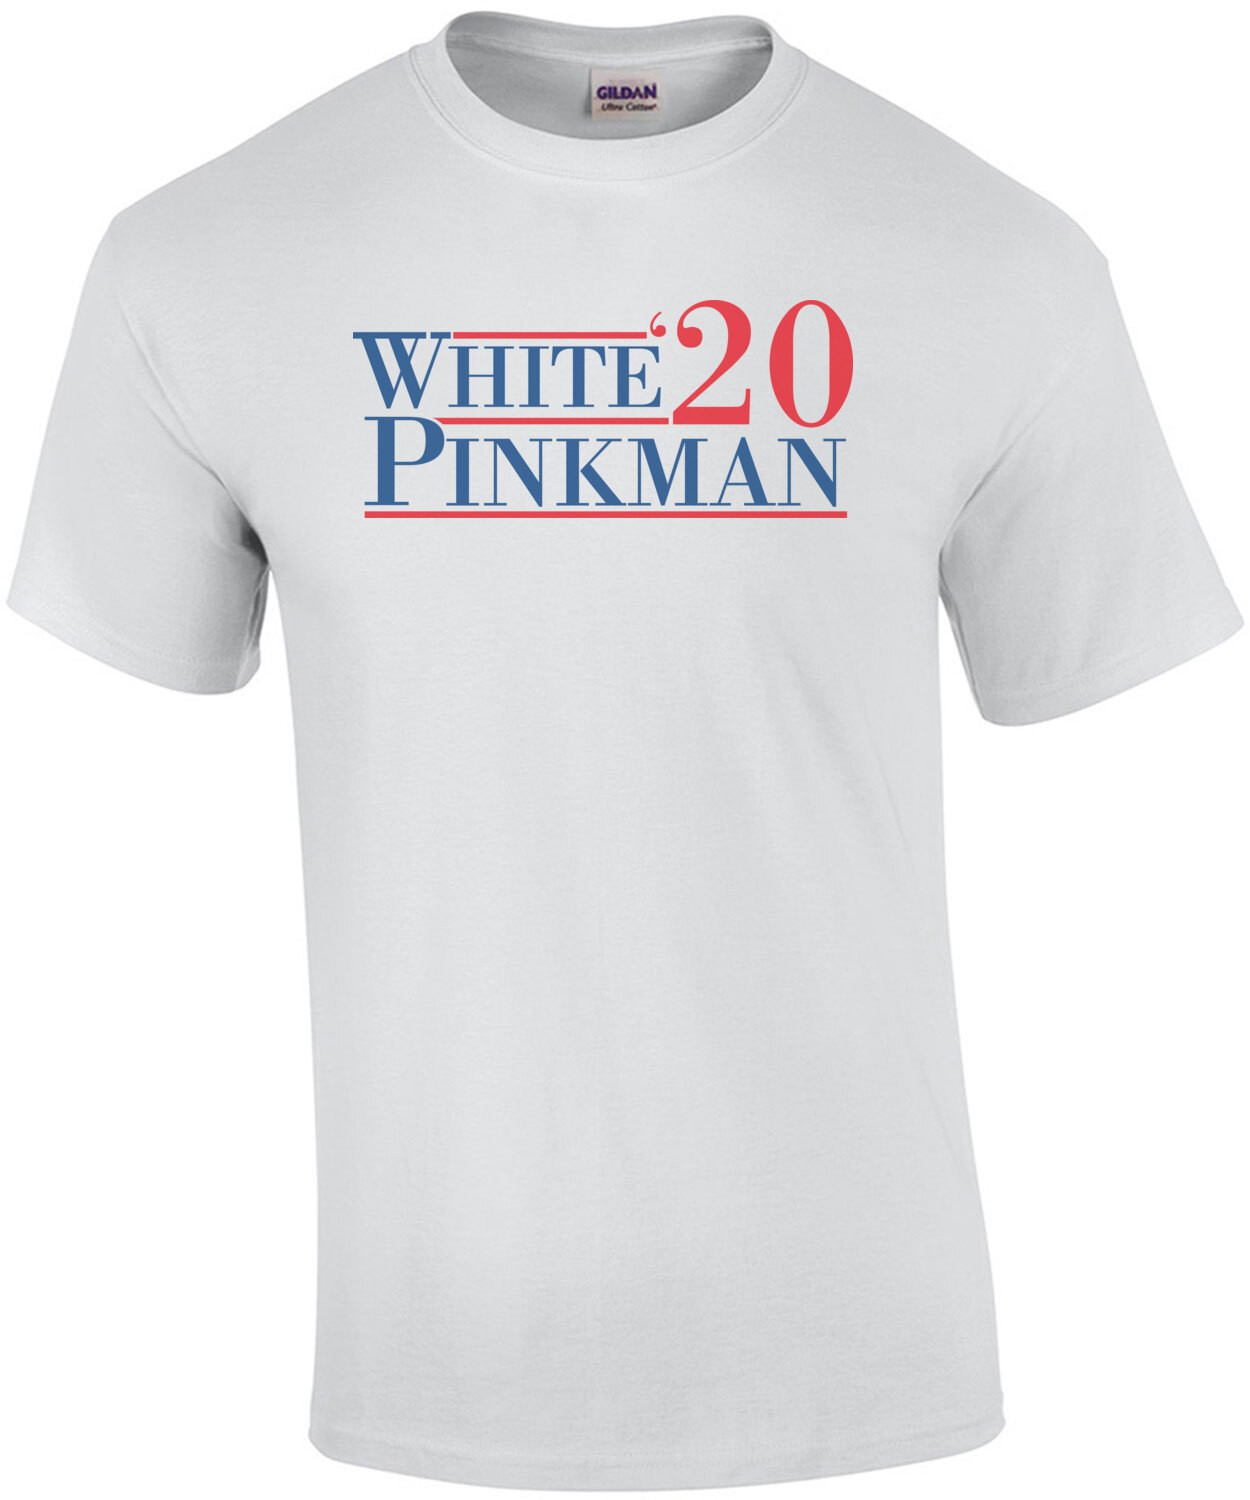 White Pinkman 2020 Election - Breaking Bad T-Shirt